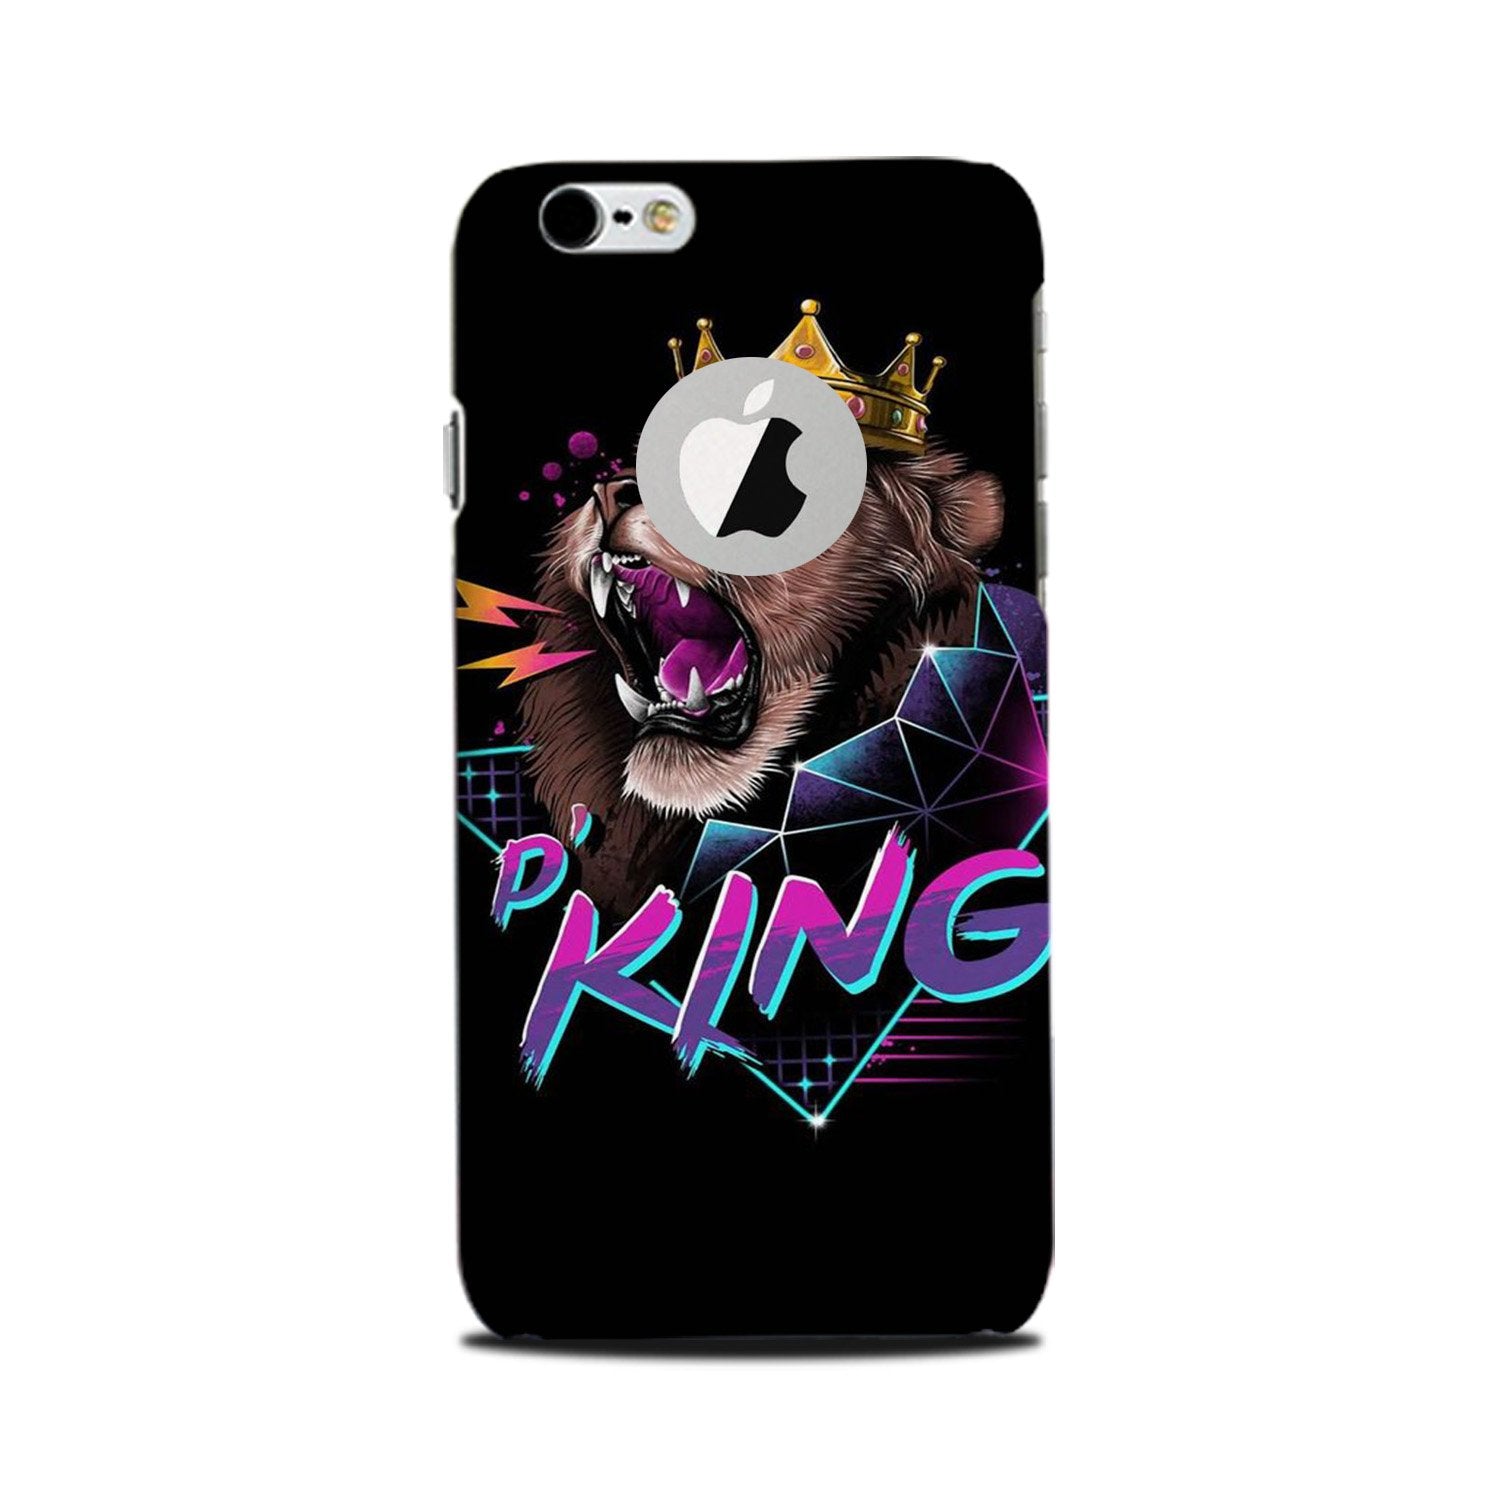 Lion King Case for iPhone 6 Plus / 6s Plus logo cut(Design No. 219)